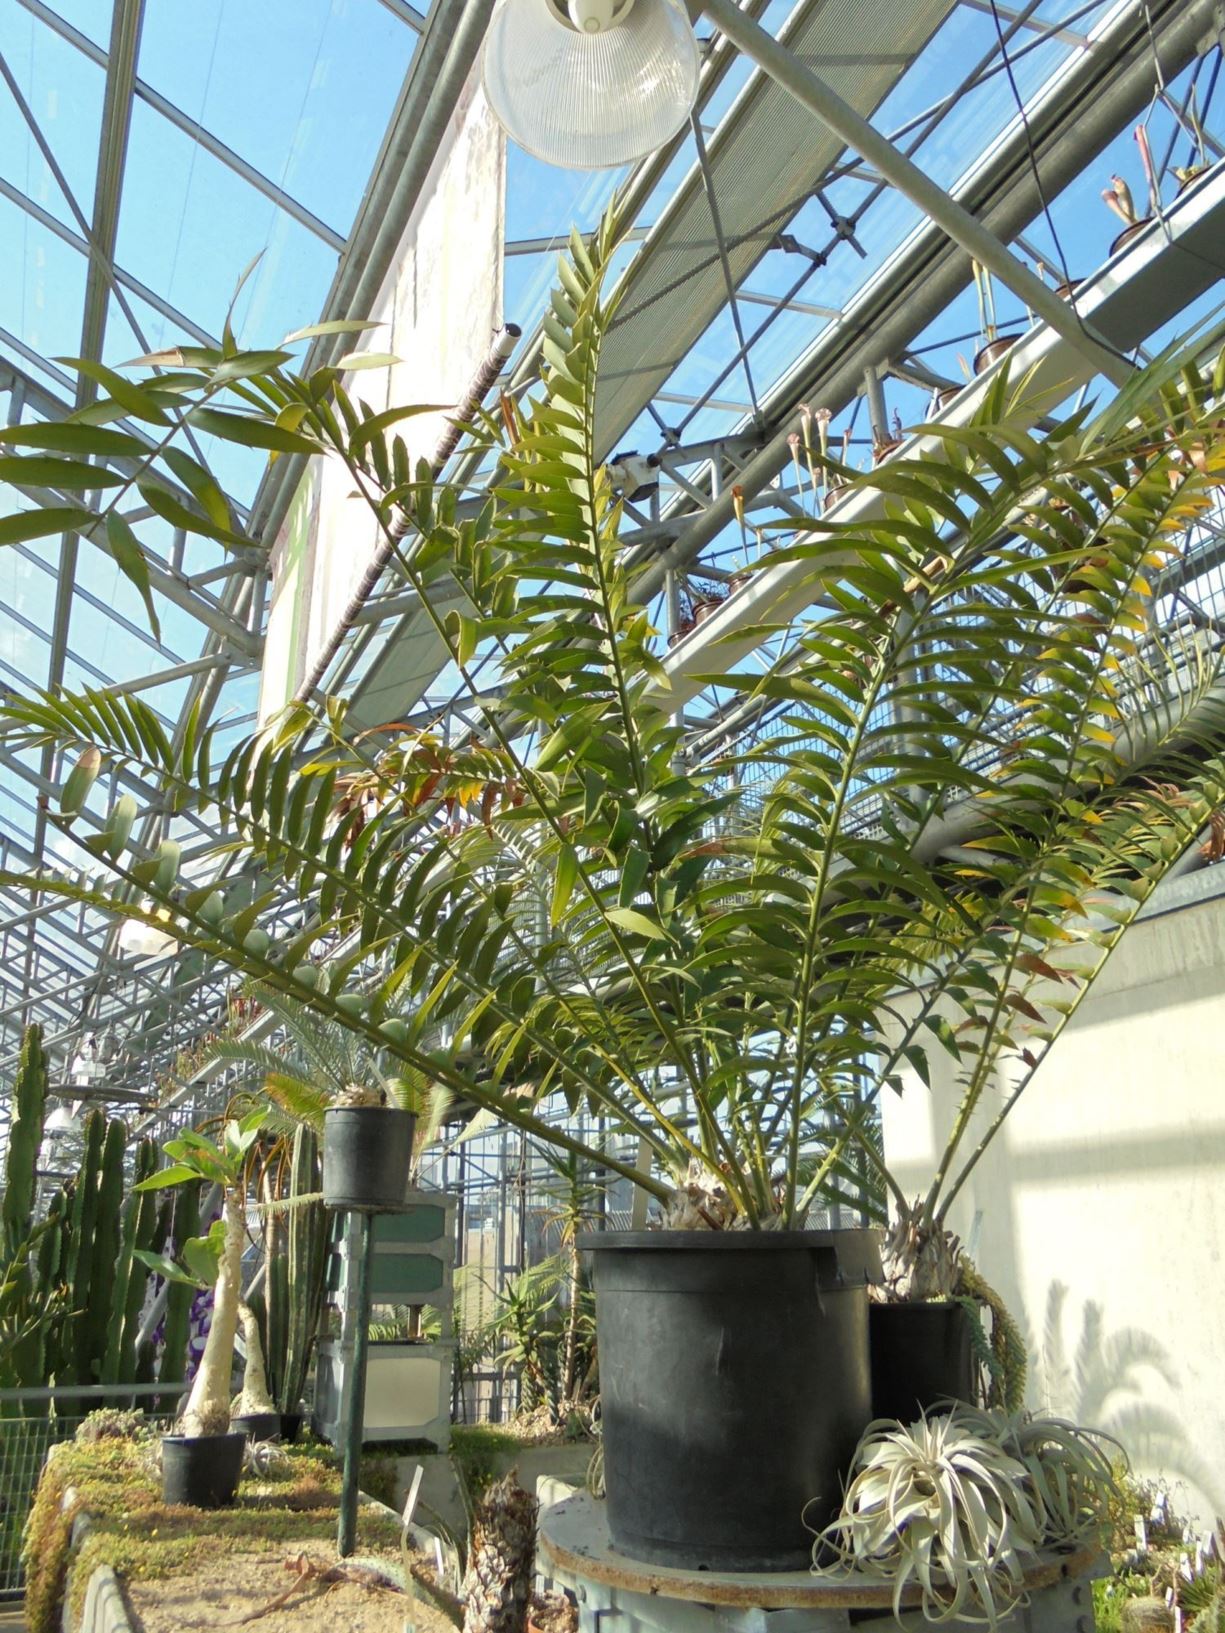 Encephalartos natalensis - Natal cycad, giant cycad, isigqikisomkhovu, umhlungulo, umguza, umphanga, Natalbroodboom